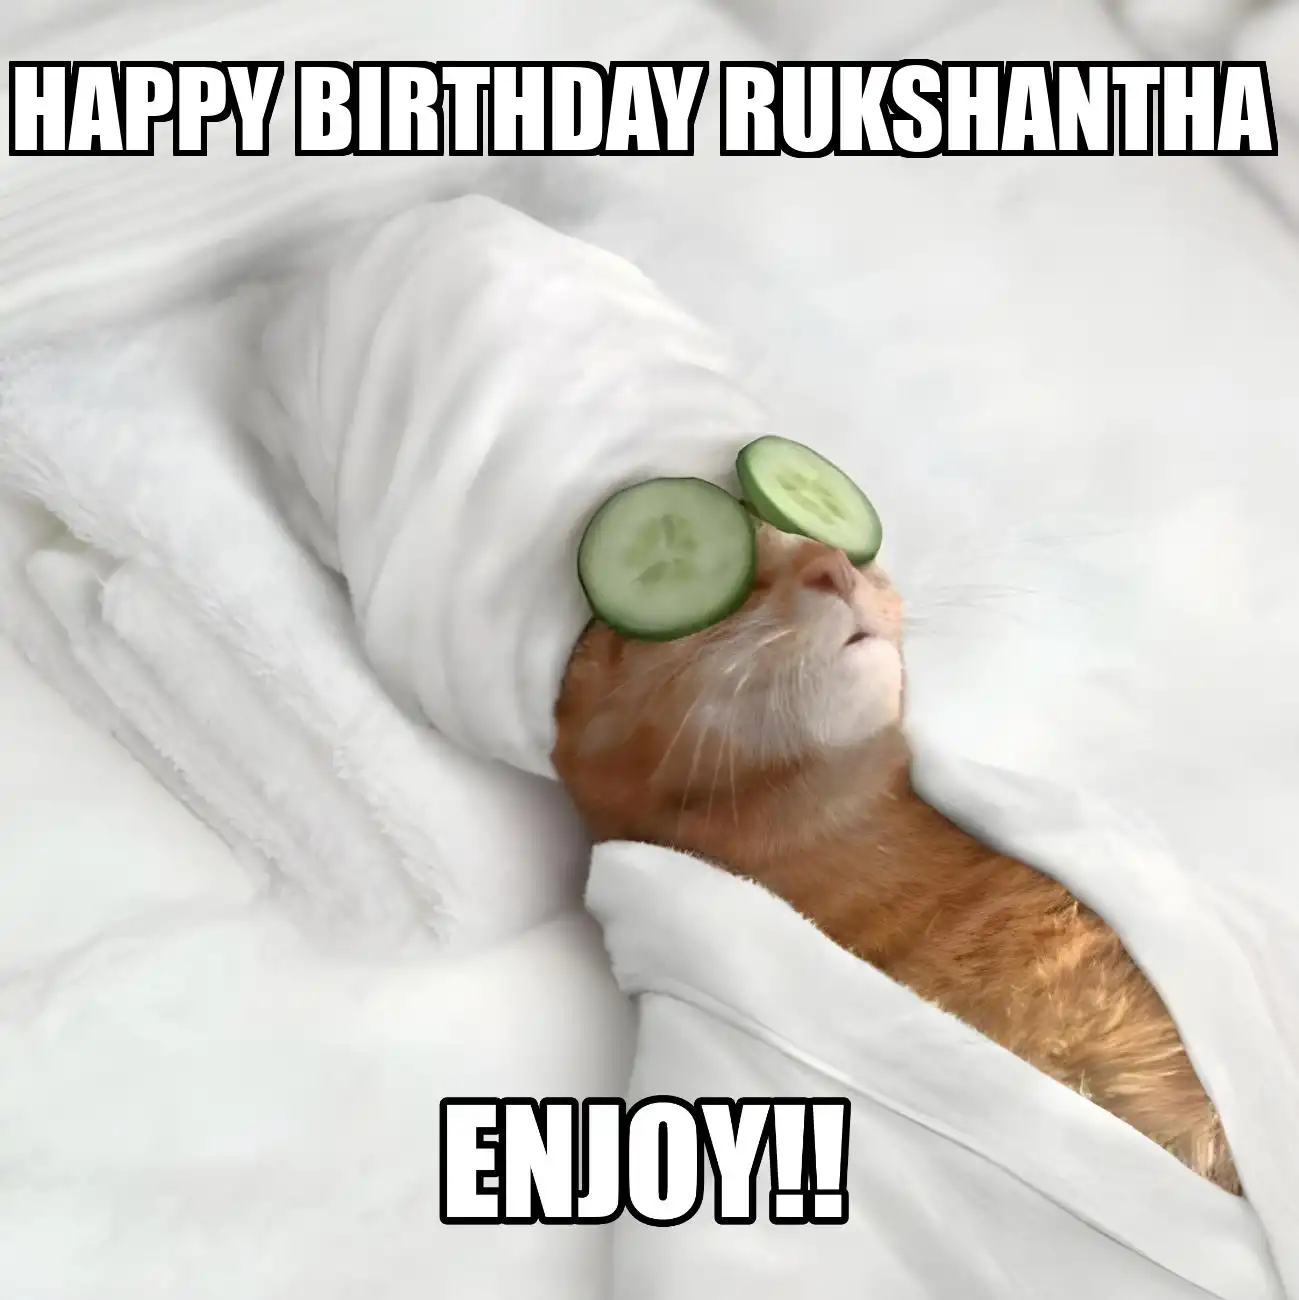 Happy Birthday Rukshantha Enjoy Cat Meme